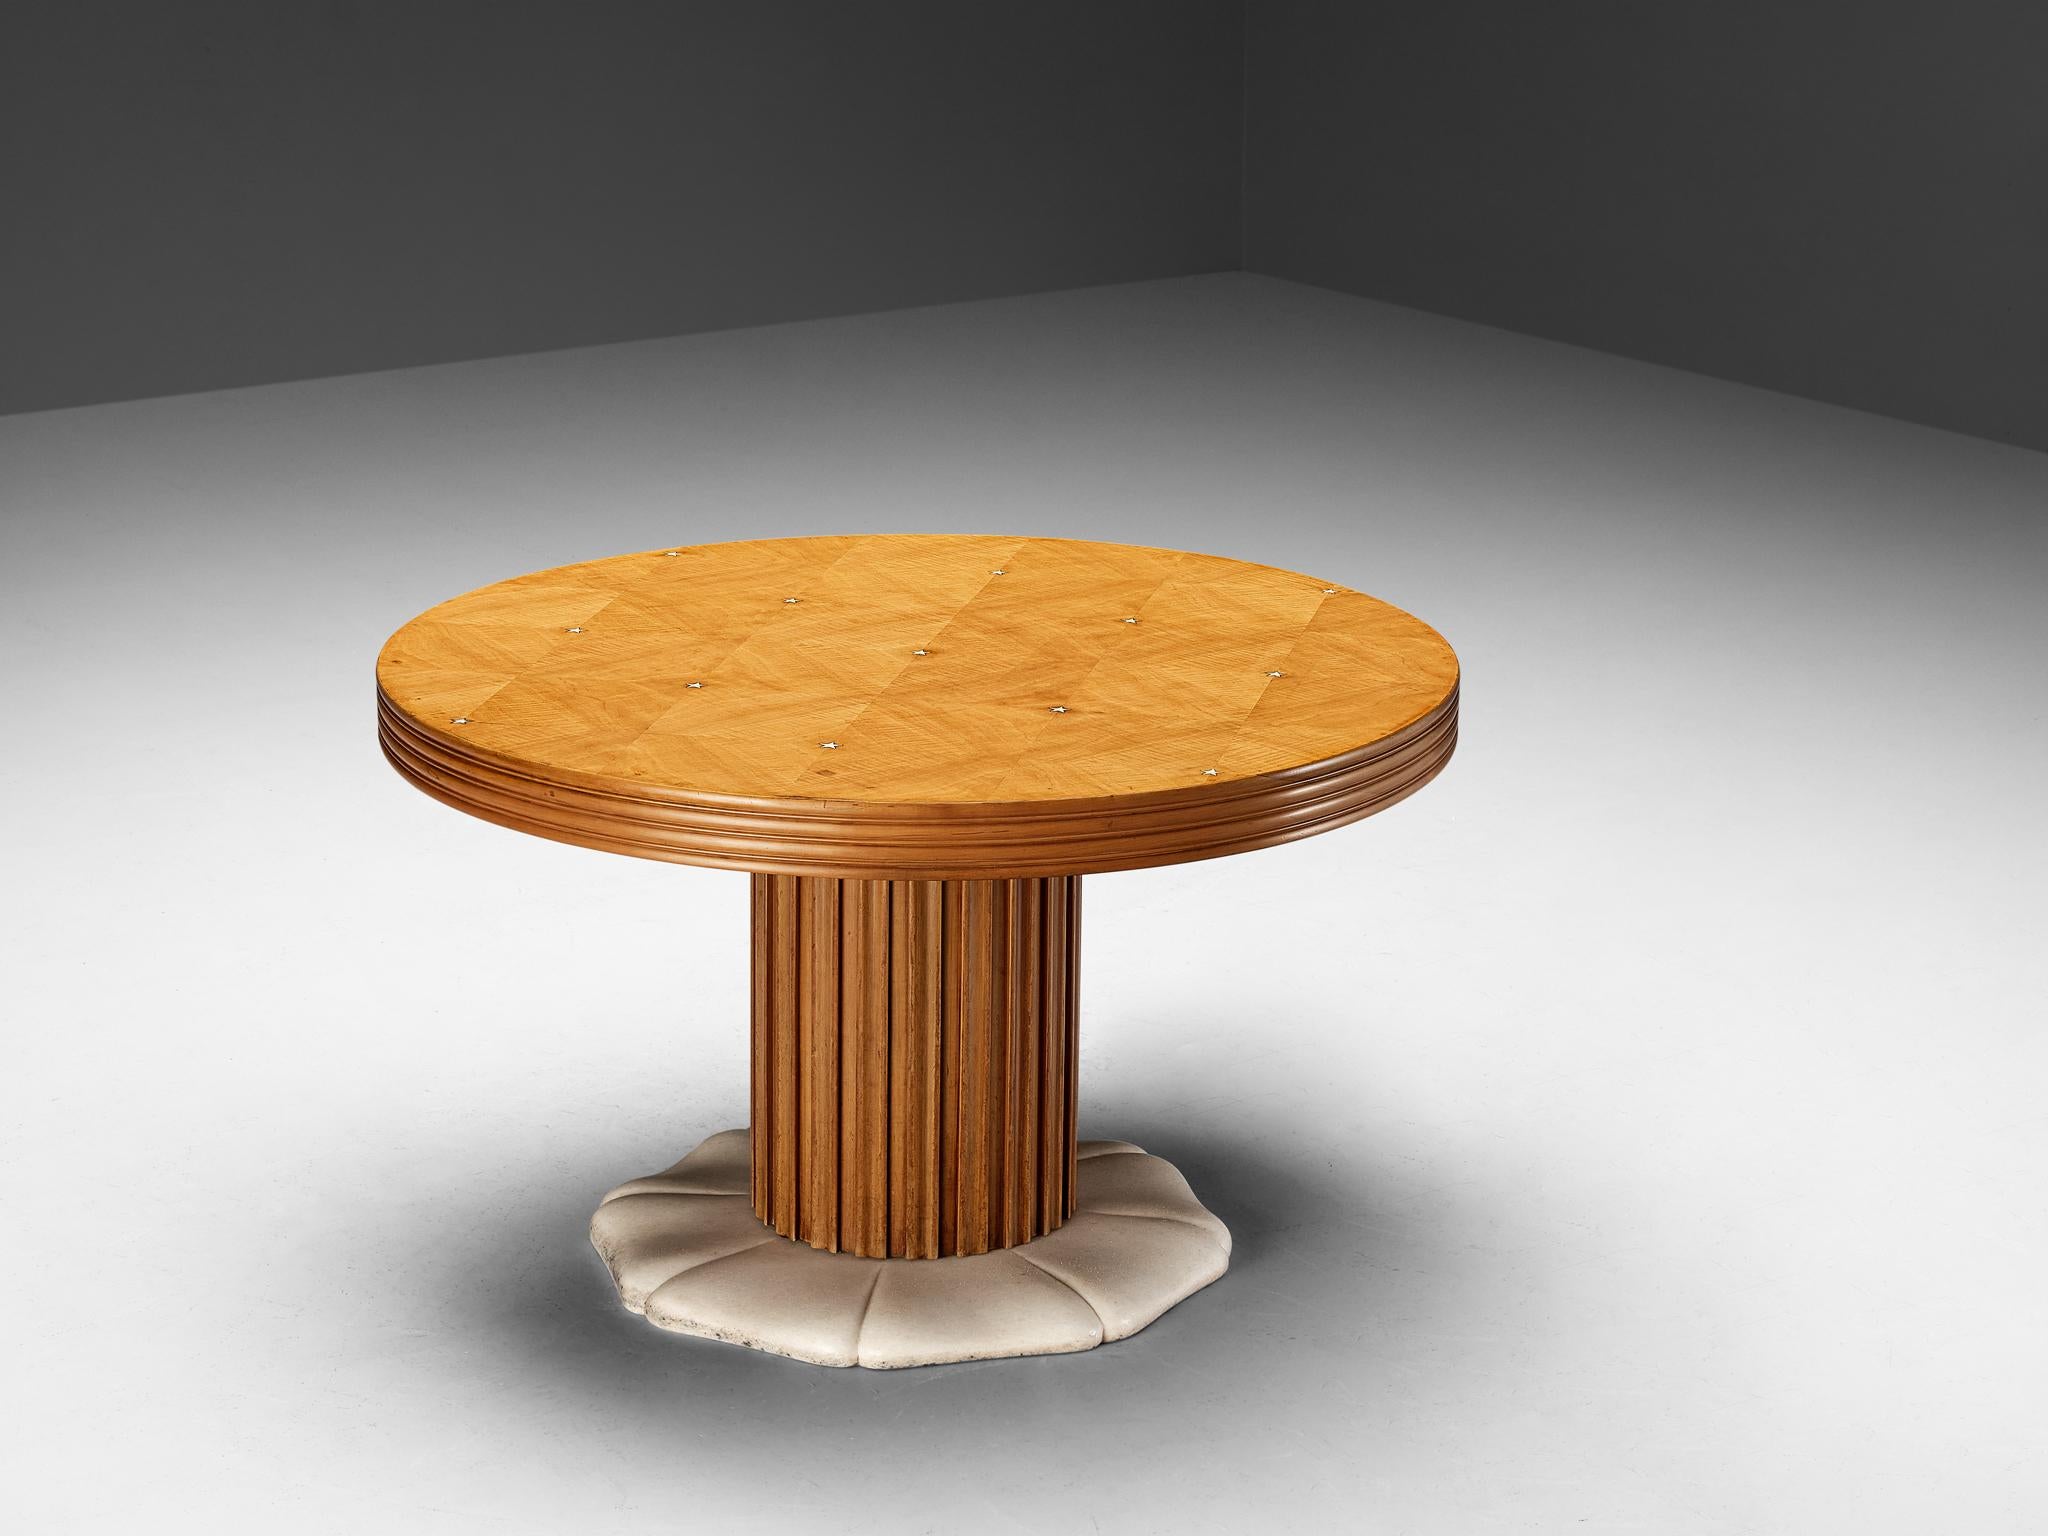 Paolo Buffa runder Tisch, Messing, Marmor, Kirschholz, Italien, um 1940

Ein großartiges Möbelstück, entworfen von Paolo Buffa. Dieser Tisch wurde um 1940 hergestellt und weist in vielerlei Hinsicht ein wunderbares Design auf. Dieser Tisch ist aus